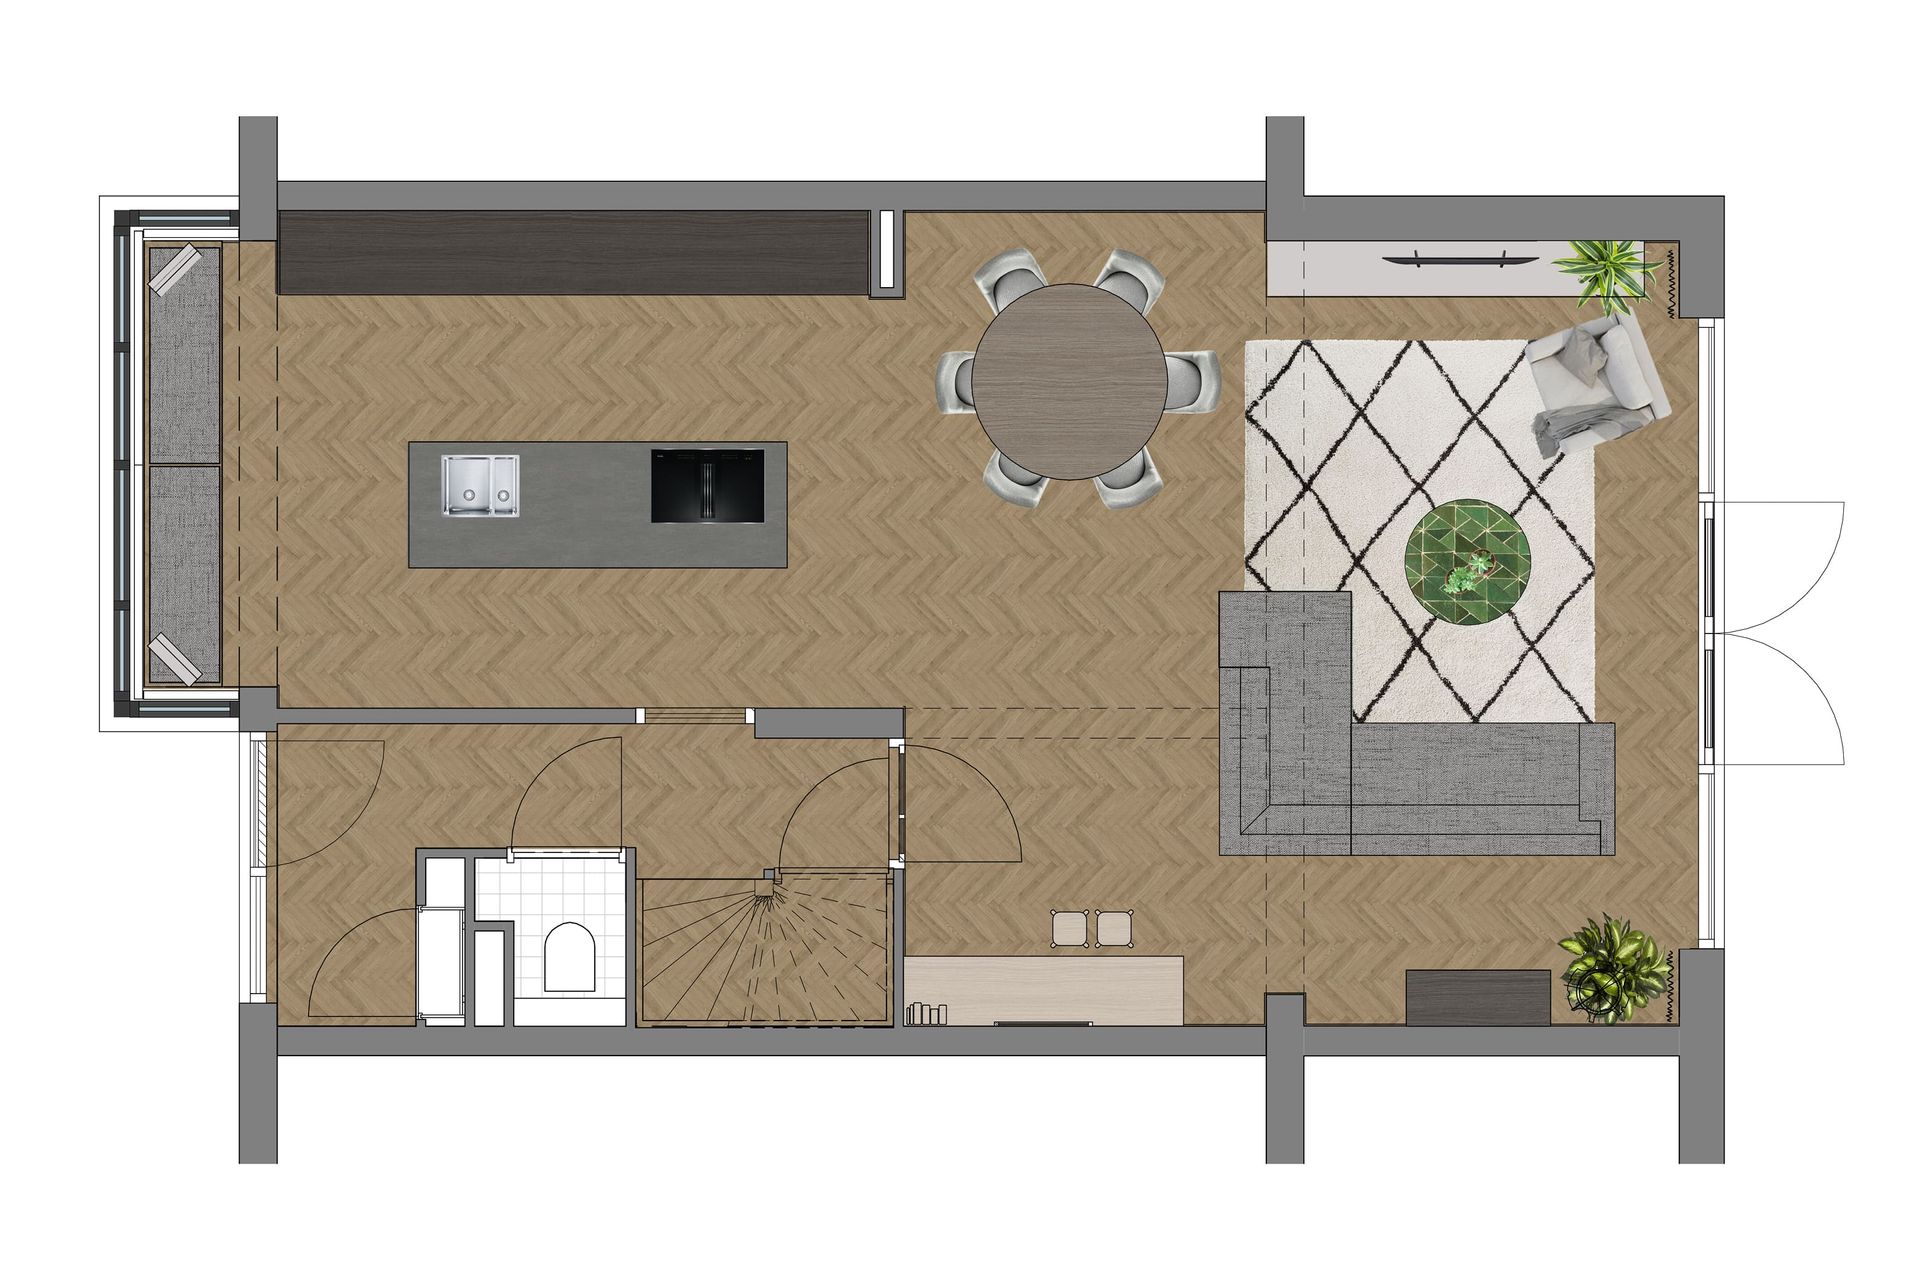 verbouw woning in heemskerk, keuken aan voorzijde van je woning, kookeiland, indelingsplattegrond
